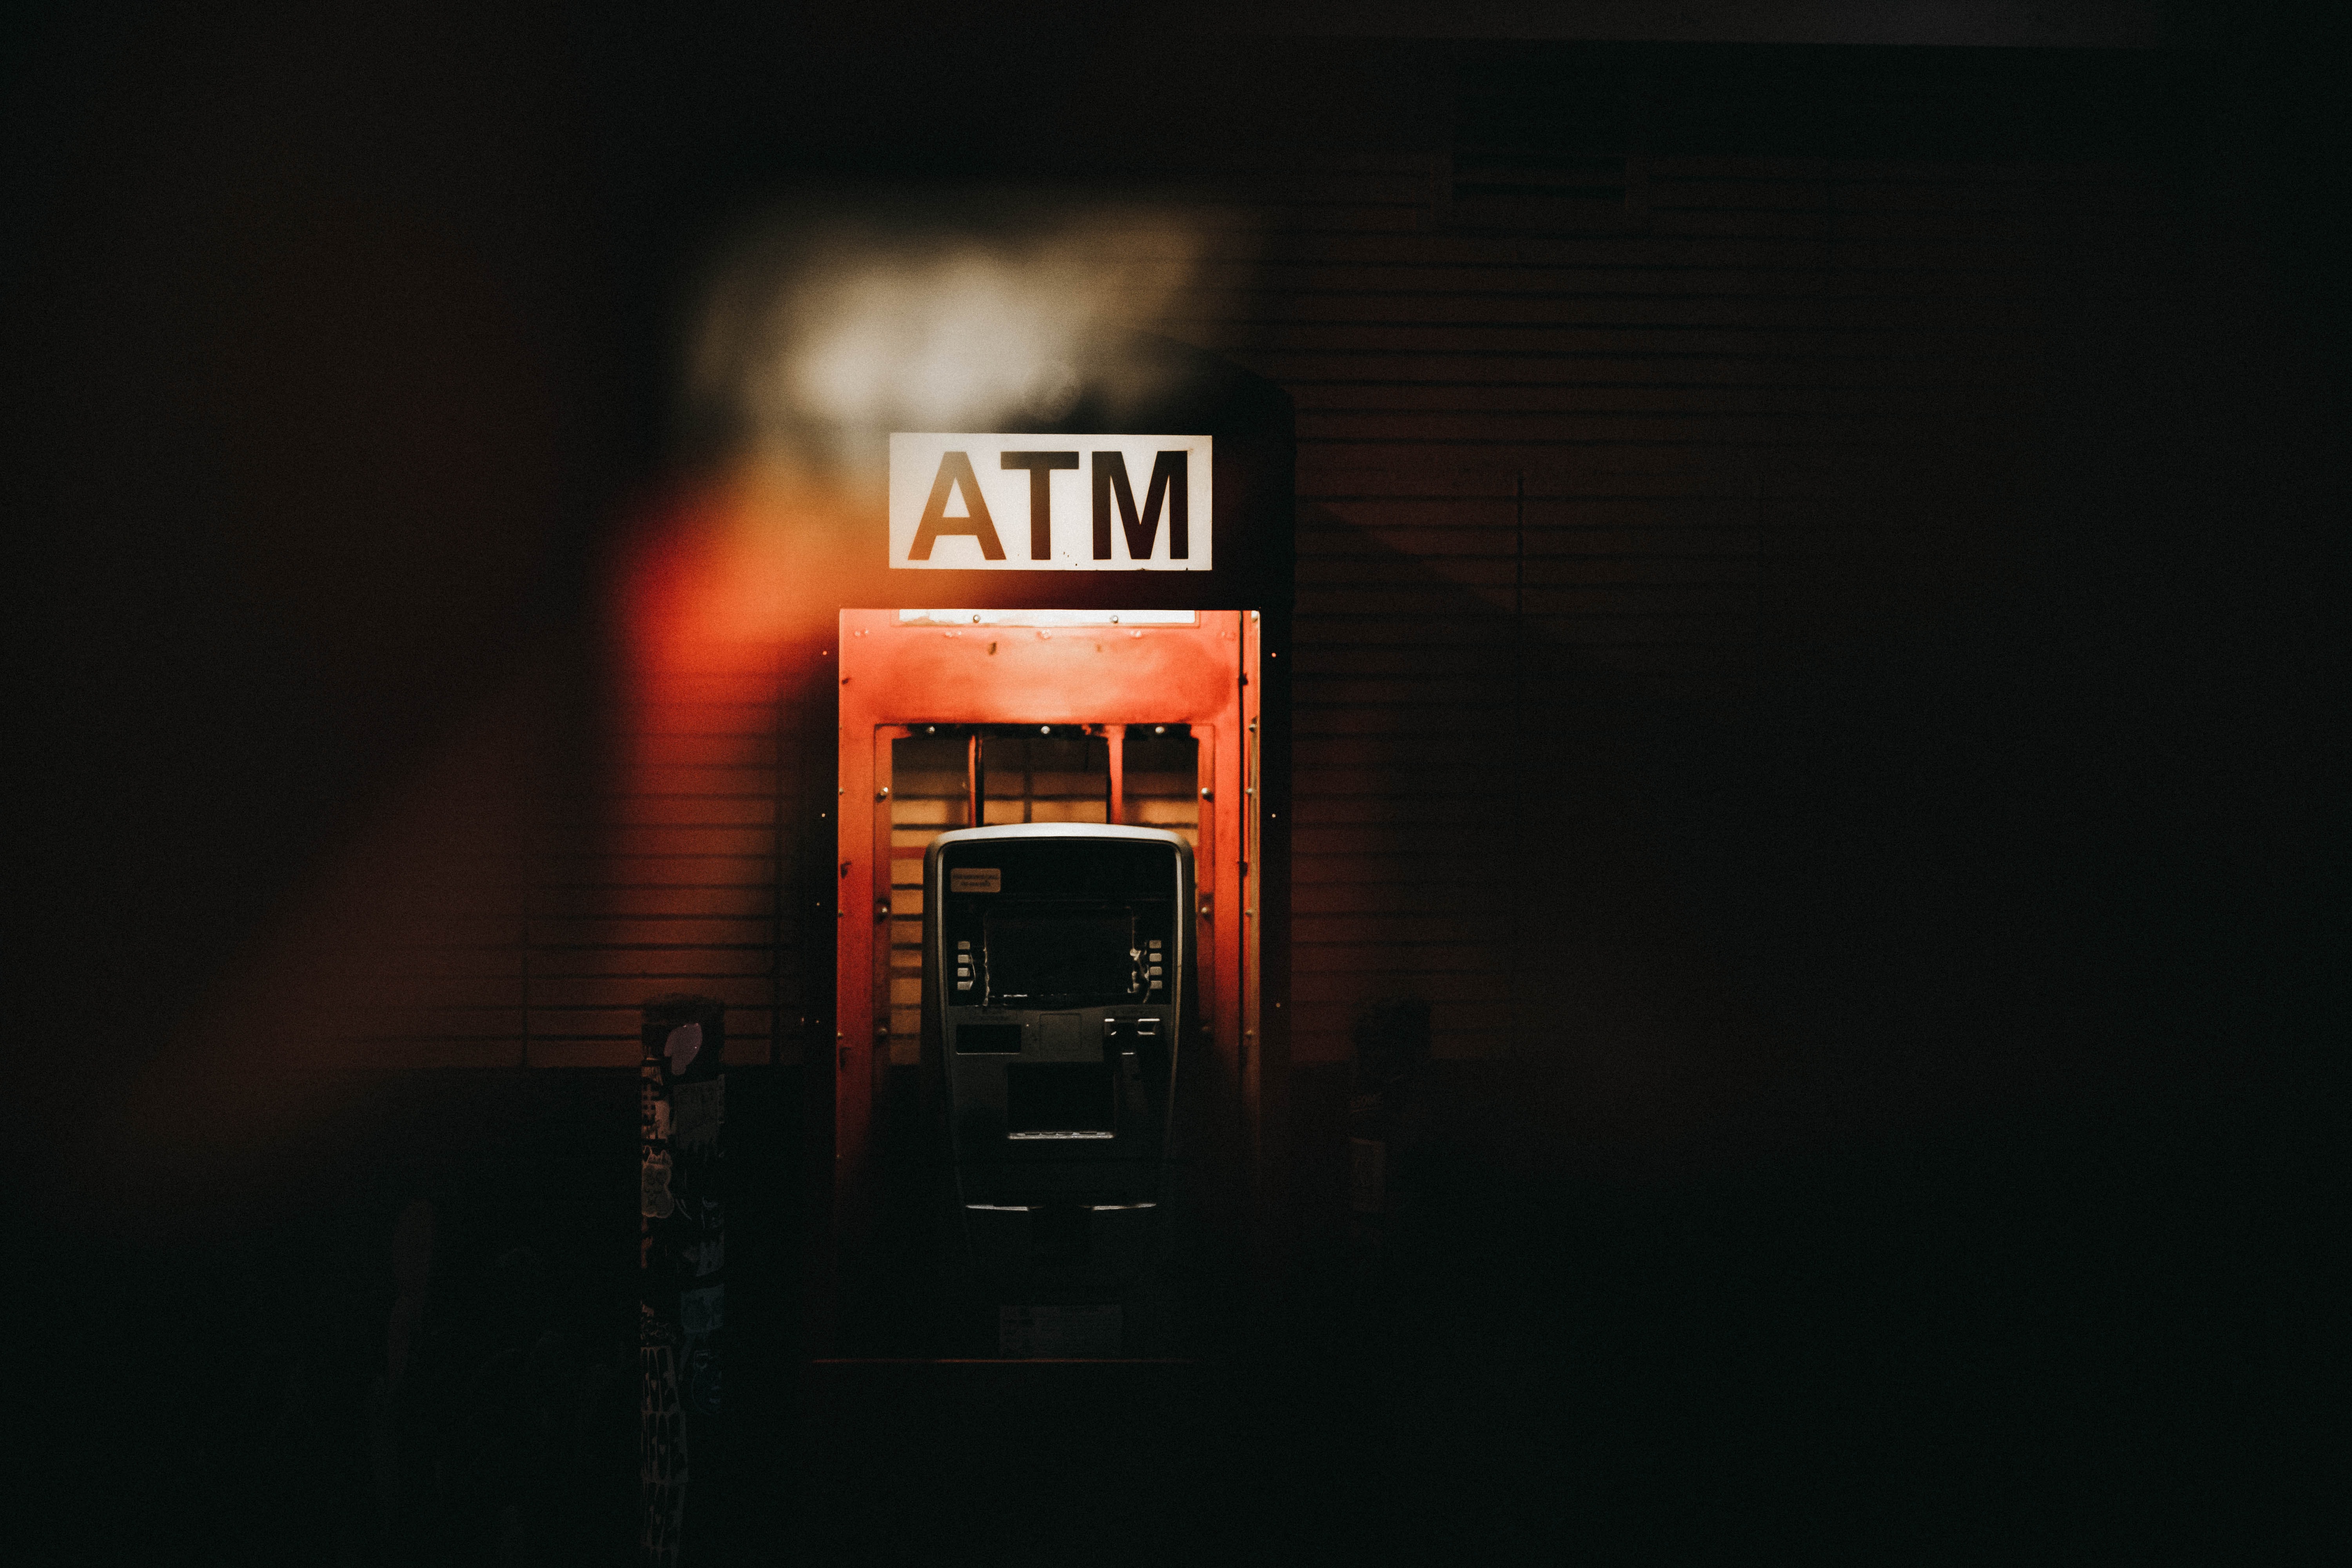 Hollanda'da akıllara durgunluk verecek hırsızlık... Marketteki ATM'yi patlattılar!